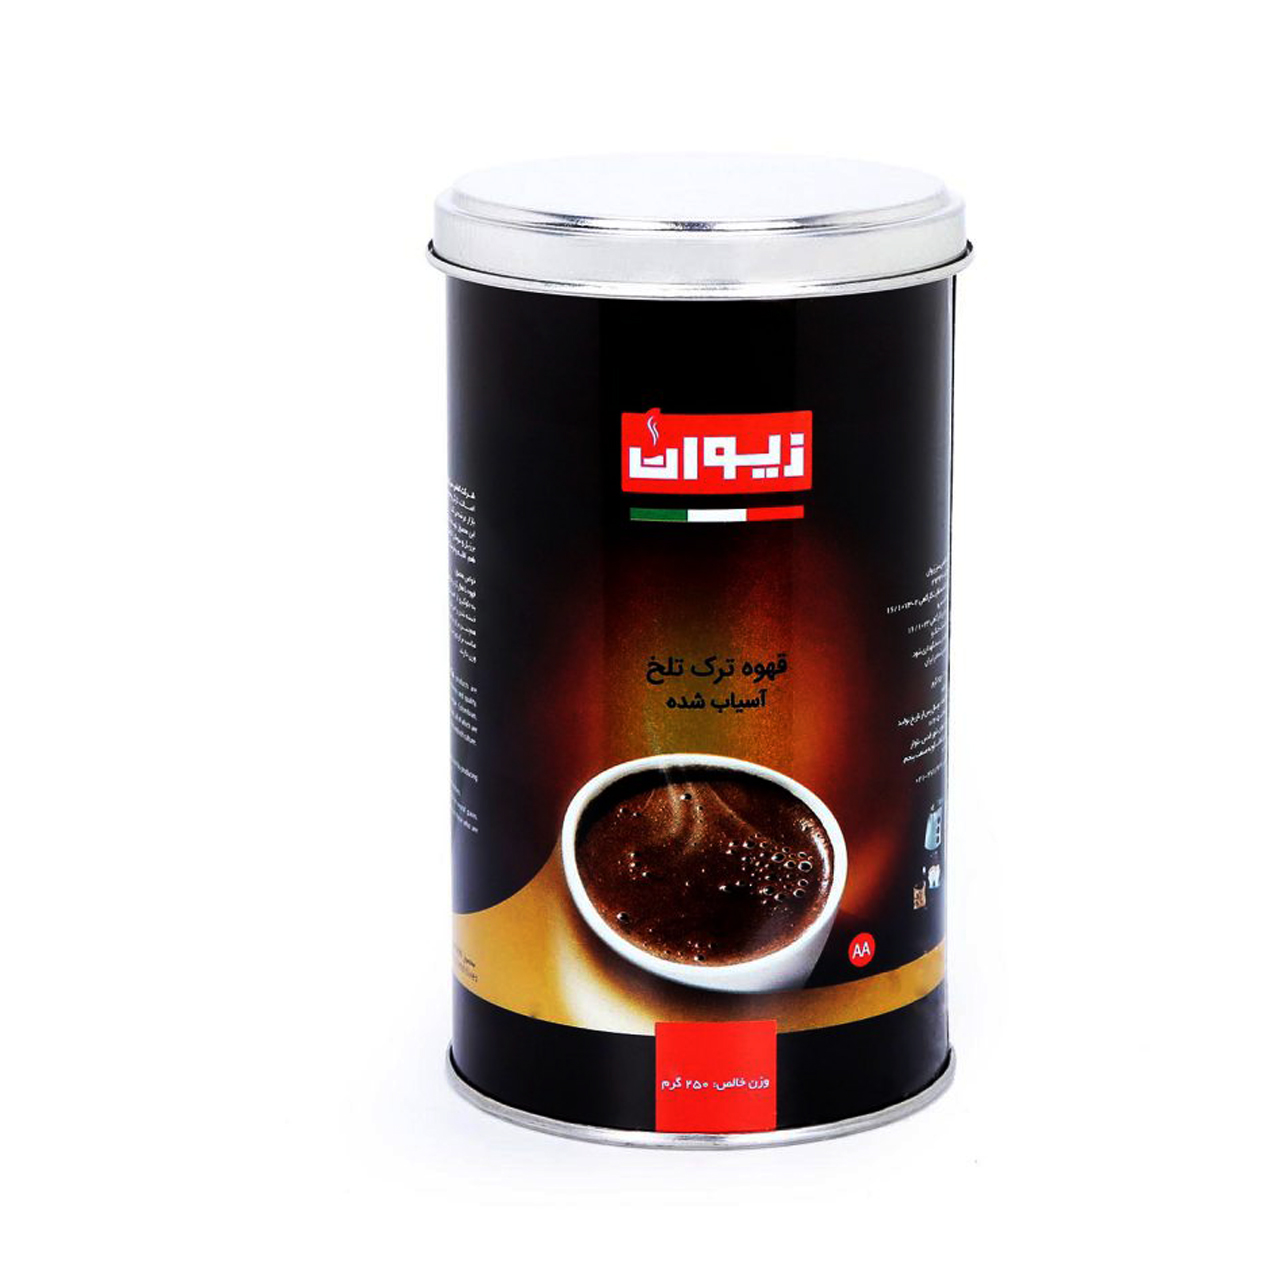 پودر قهوه ترک تلخ زیوان مدل Dark Turkish Grounded مقدار 250 گرم